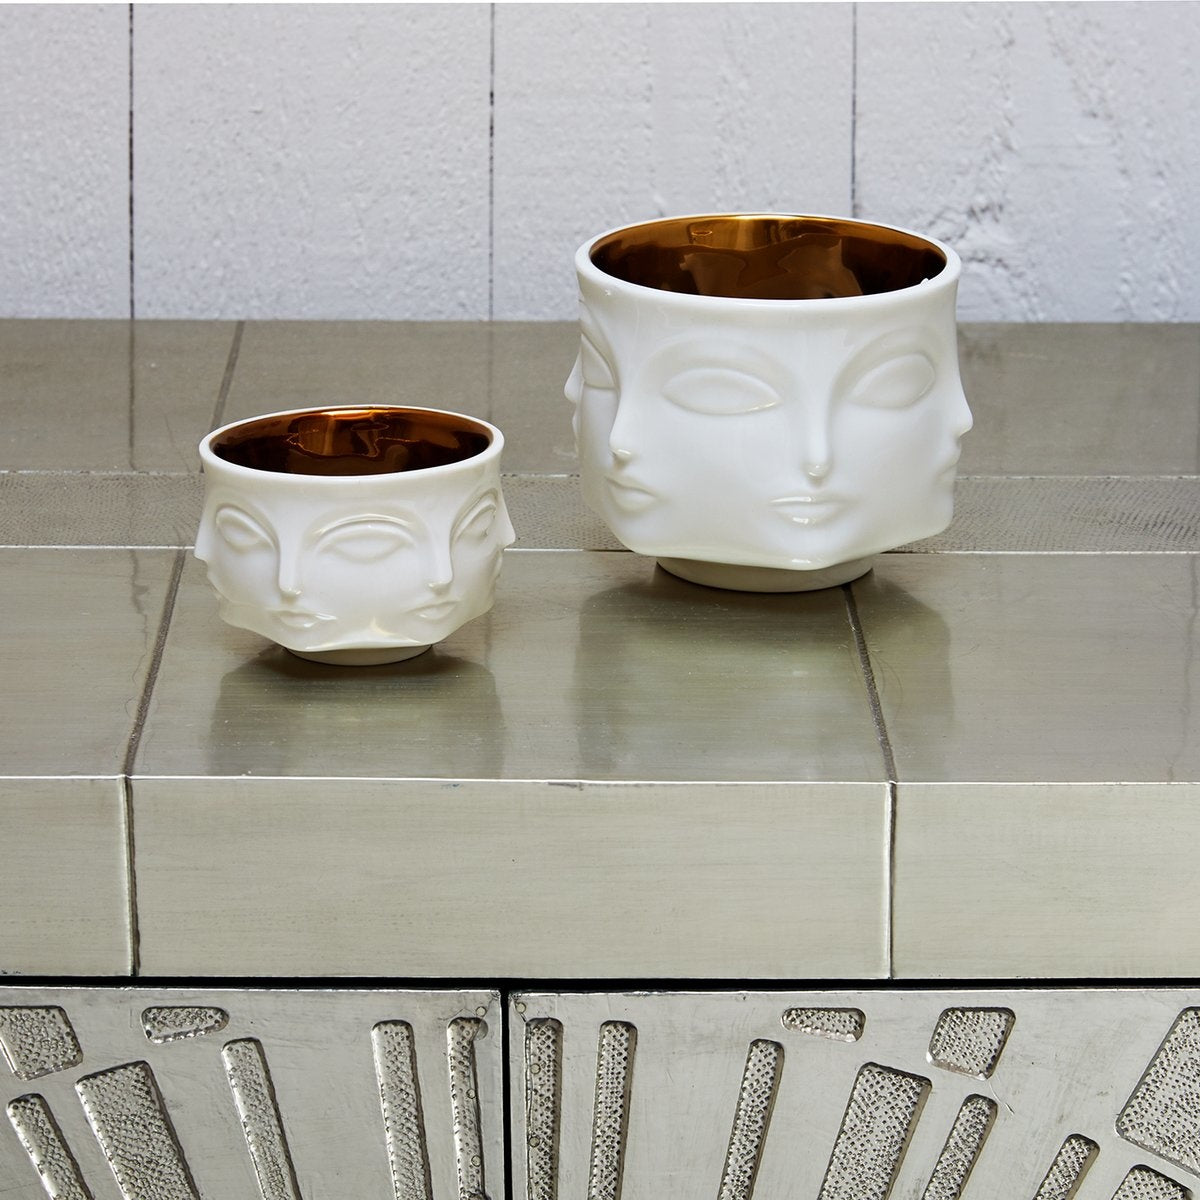 Maison Lipari Muse Bowl White/Gold Interior Porcelain D: 4.25 in H: 3.5 in  JONATHAN ADLER.